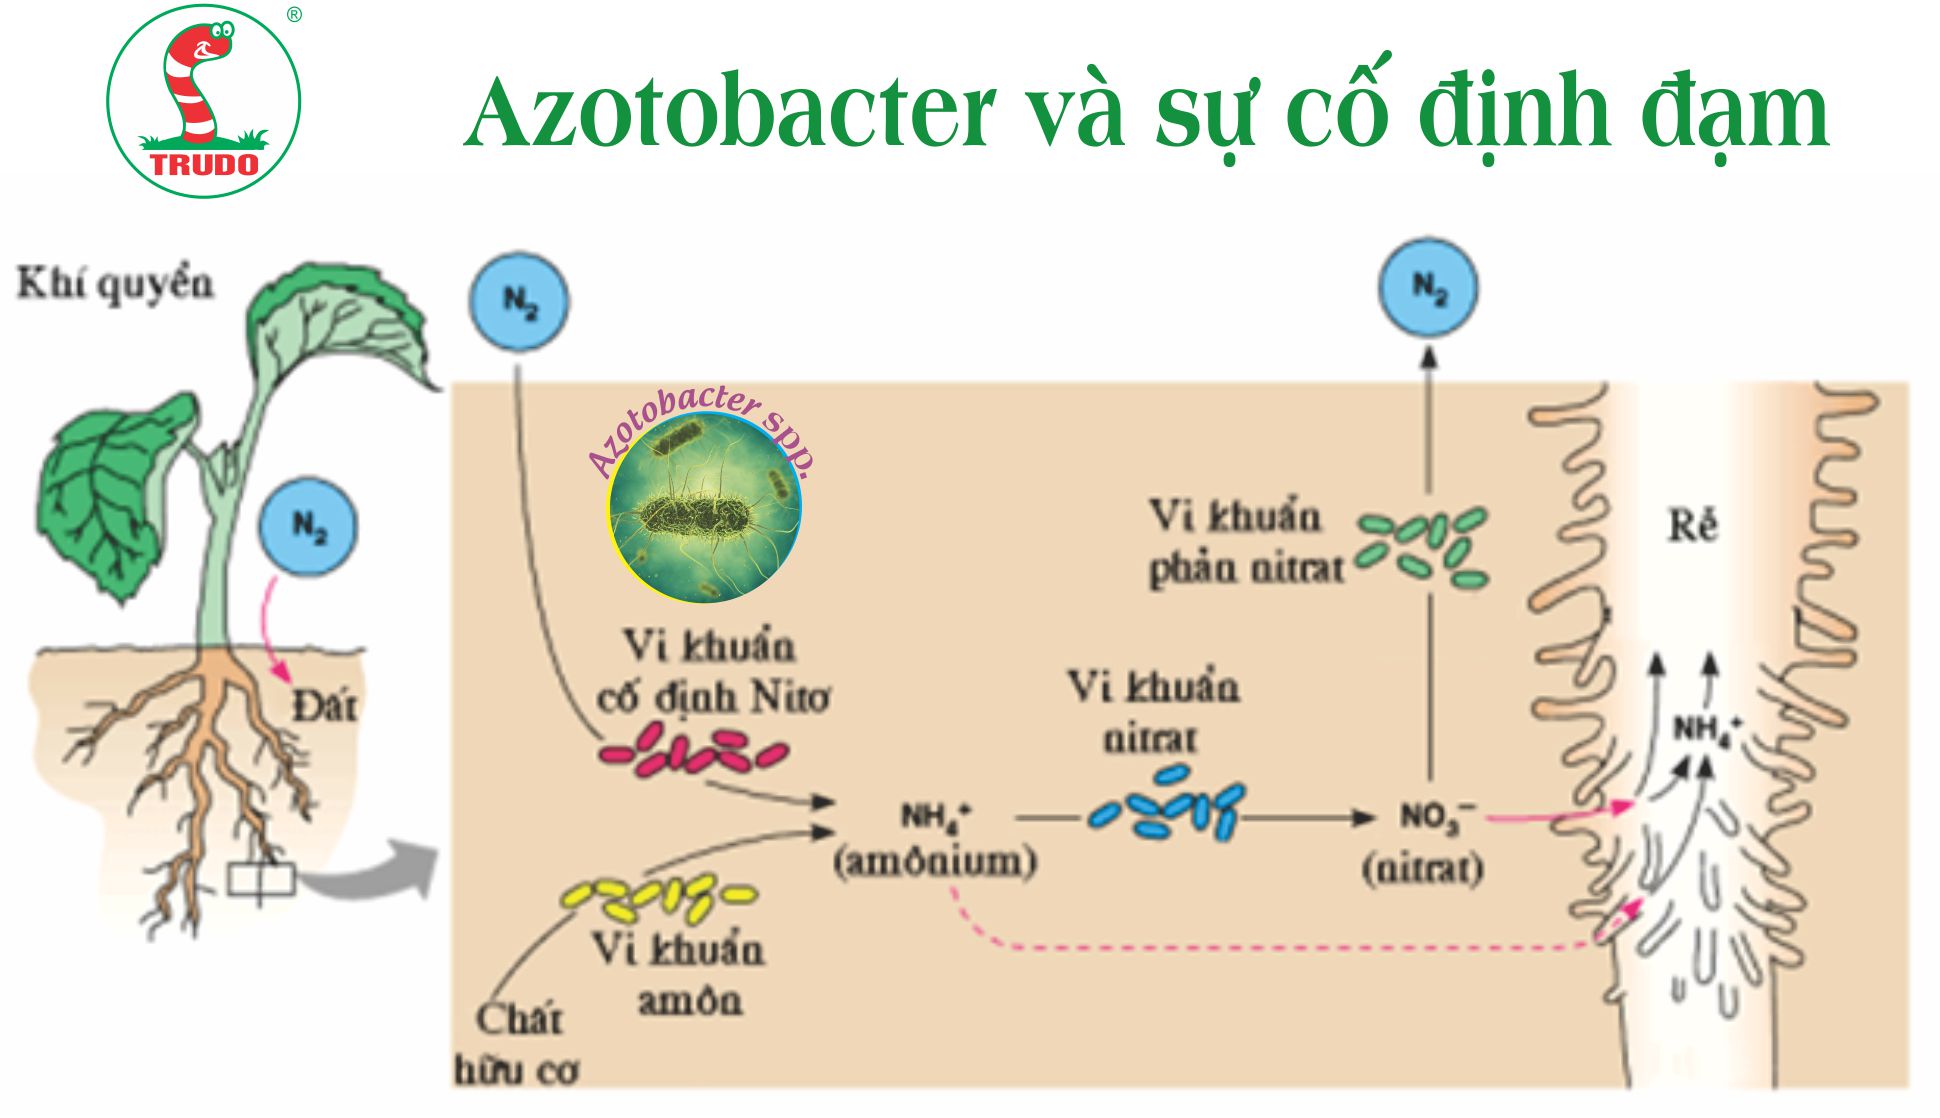 azotobacter là gì